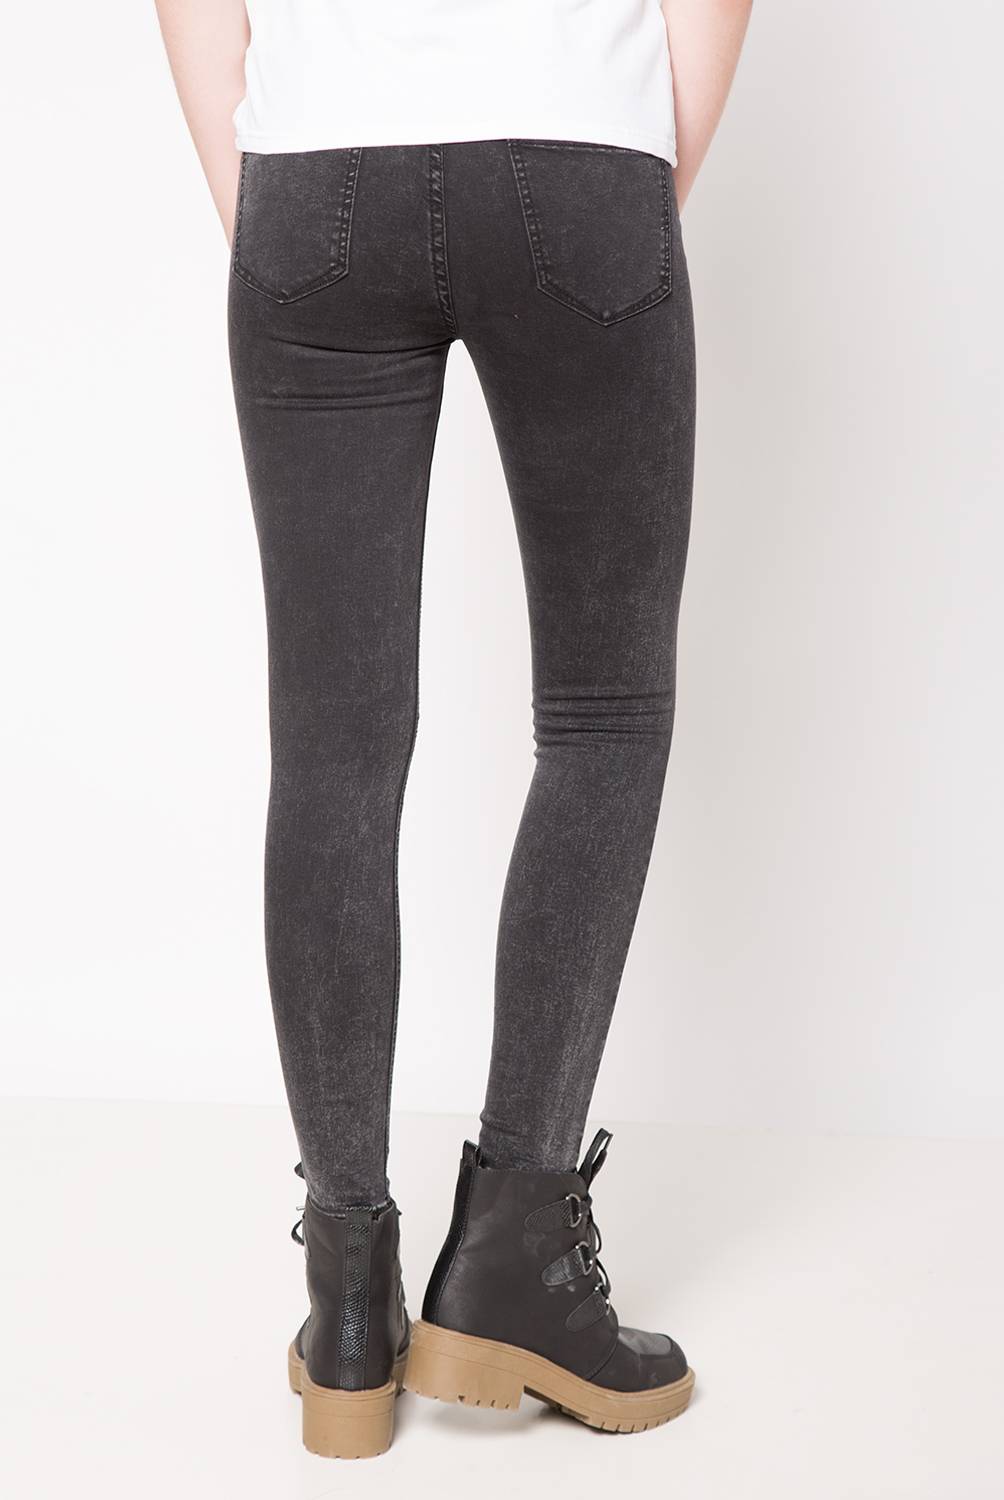 SYBILLA - Sybilla Jeans Denim Regular Tiro Medio Mujer